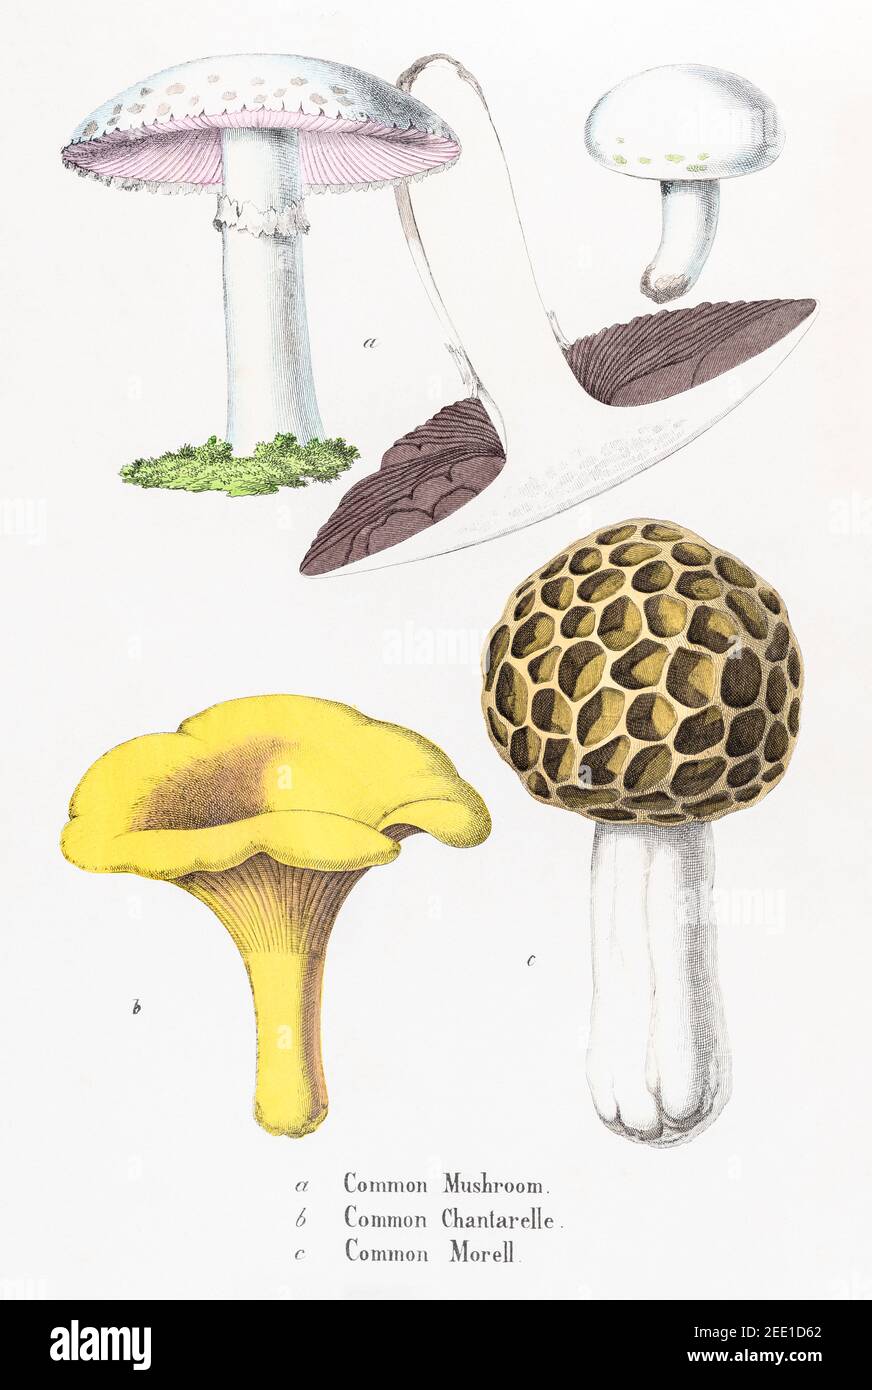 Digital restaurierte viktorianische botanische Illustration aus dem 19th. Jahrhundert von Chanterelle, Pilzen & Morelpilzen. Informationen zu Quelle und Prozess finden Sie in den Hinweisen. Stockfoto